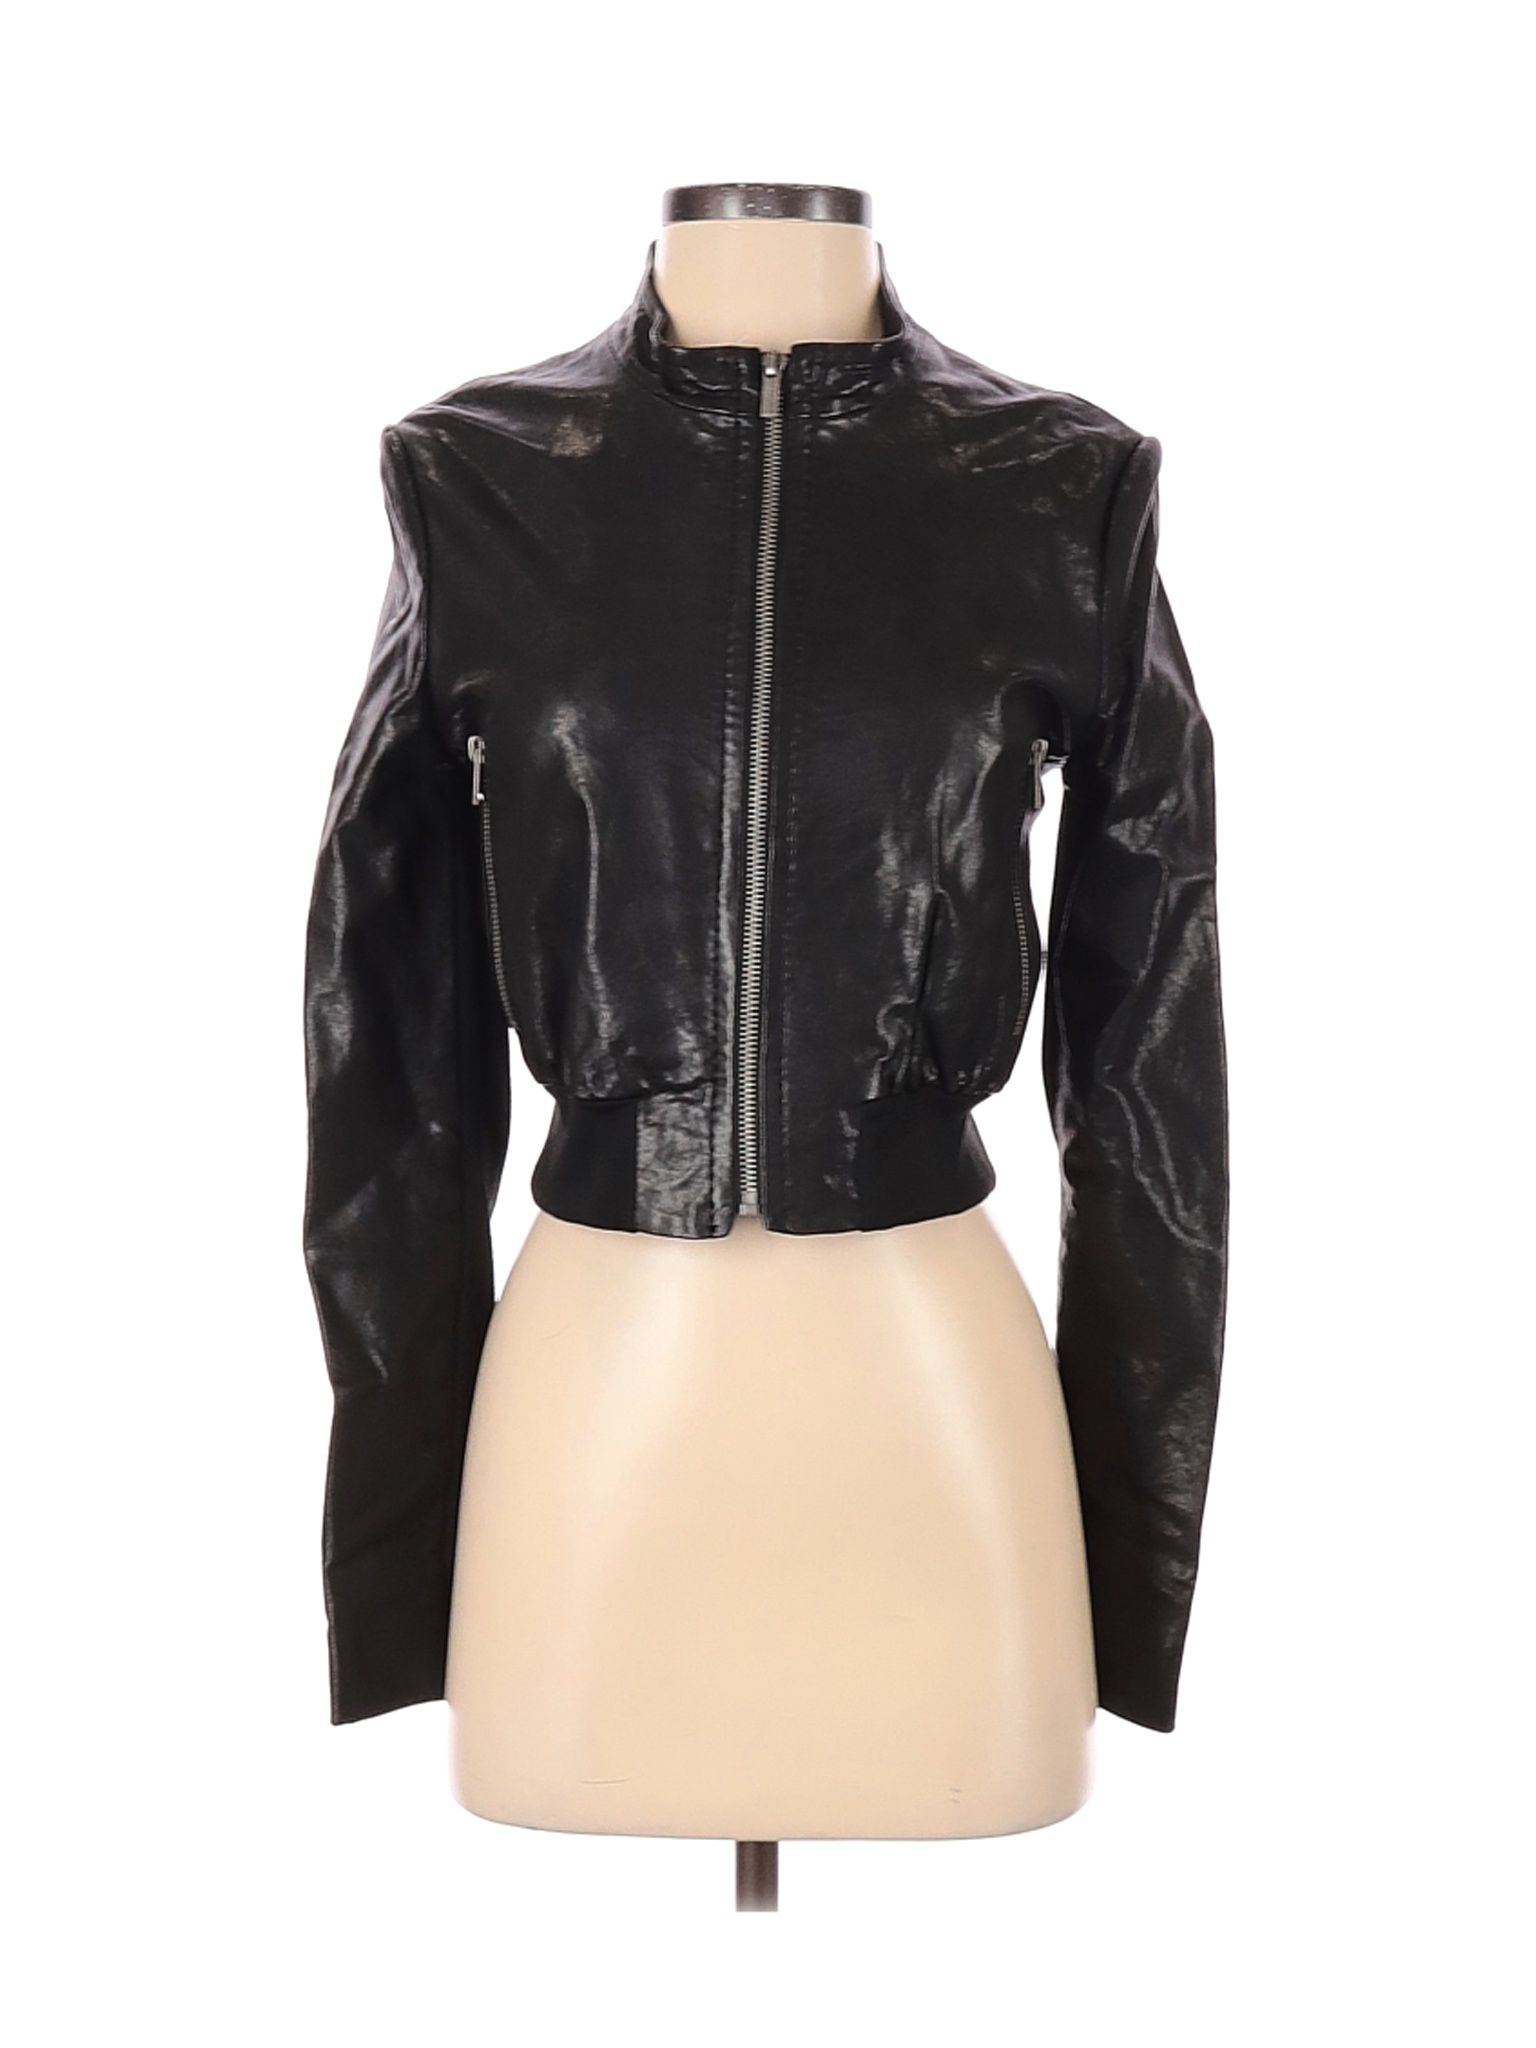 BCBGMAXAZRIA Women Black Leather Jacket S | eBay